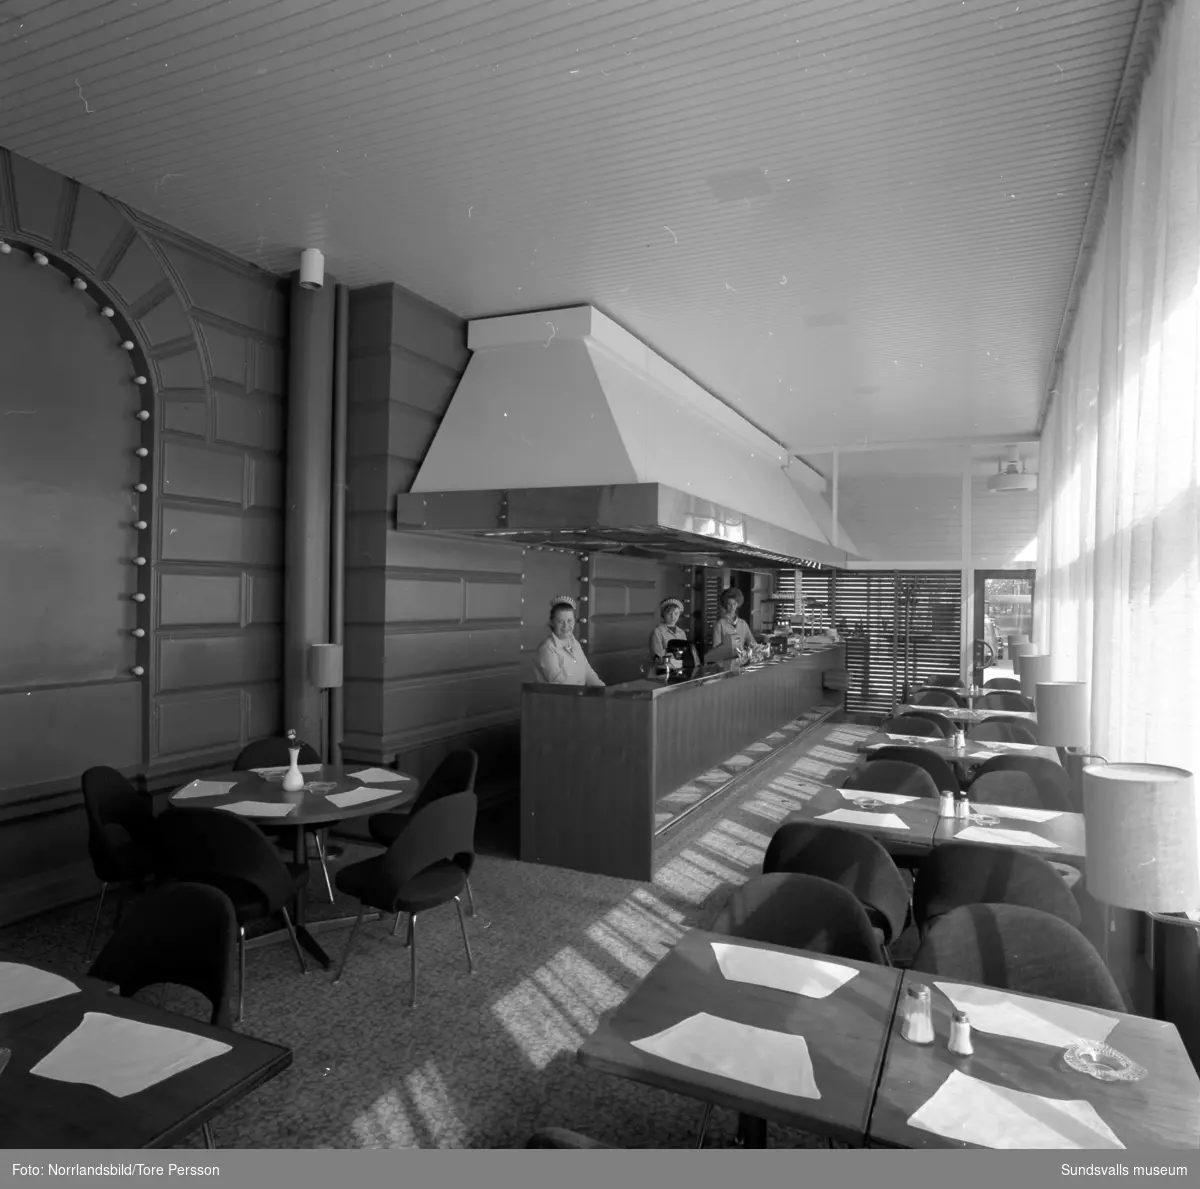 Interiörbilder från Stadshusrestaurangens nya veranda. Utbudet är varierat med såväl fin restaurang som enklare kafé och grillbar.